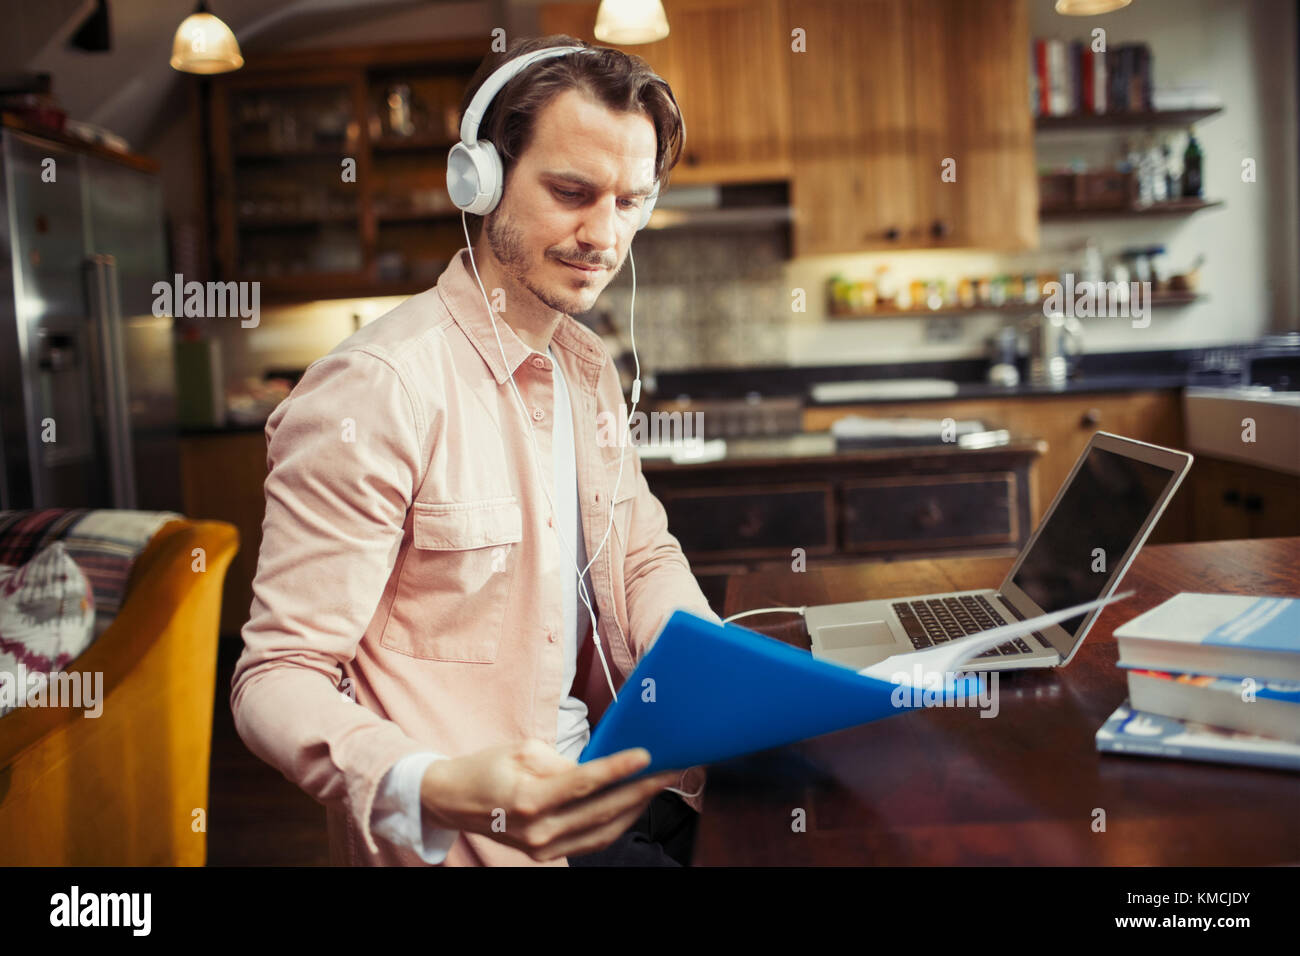 Homme avec un casque qui travaille à un ordinateur portable, lisant des documents dans la cuisine Banque D'Images